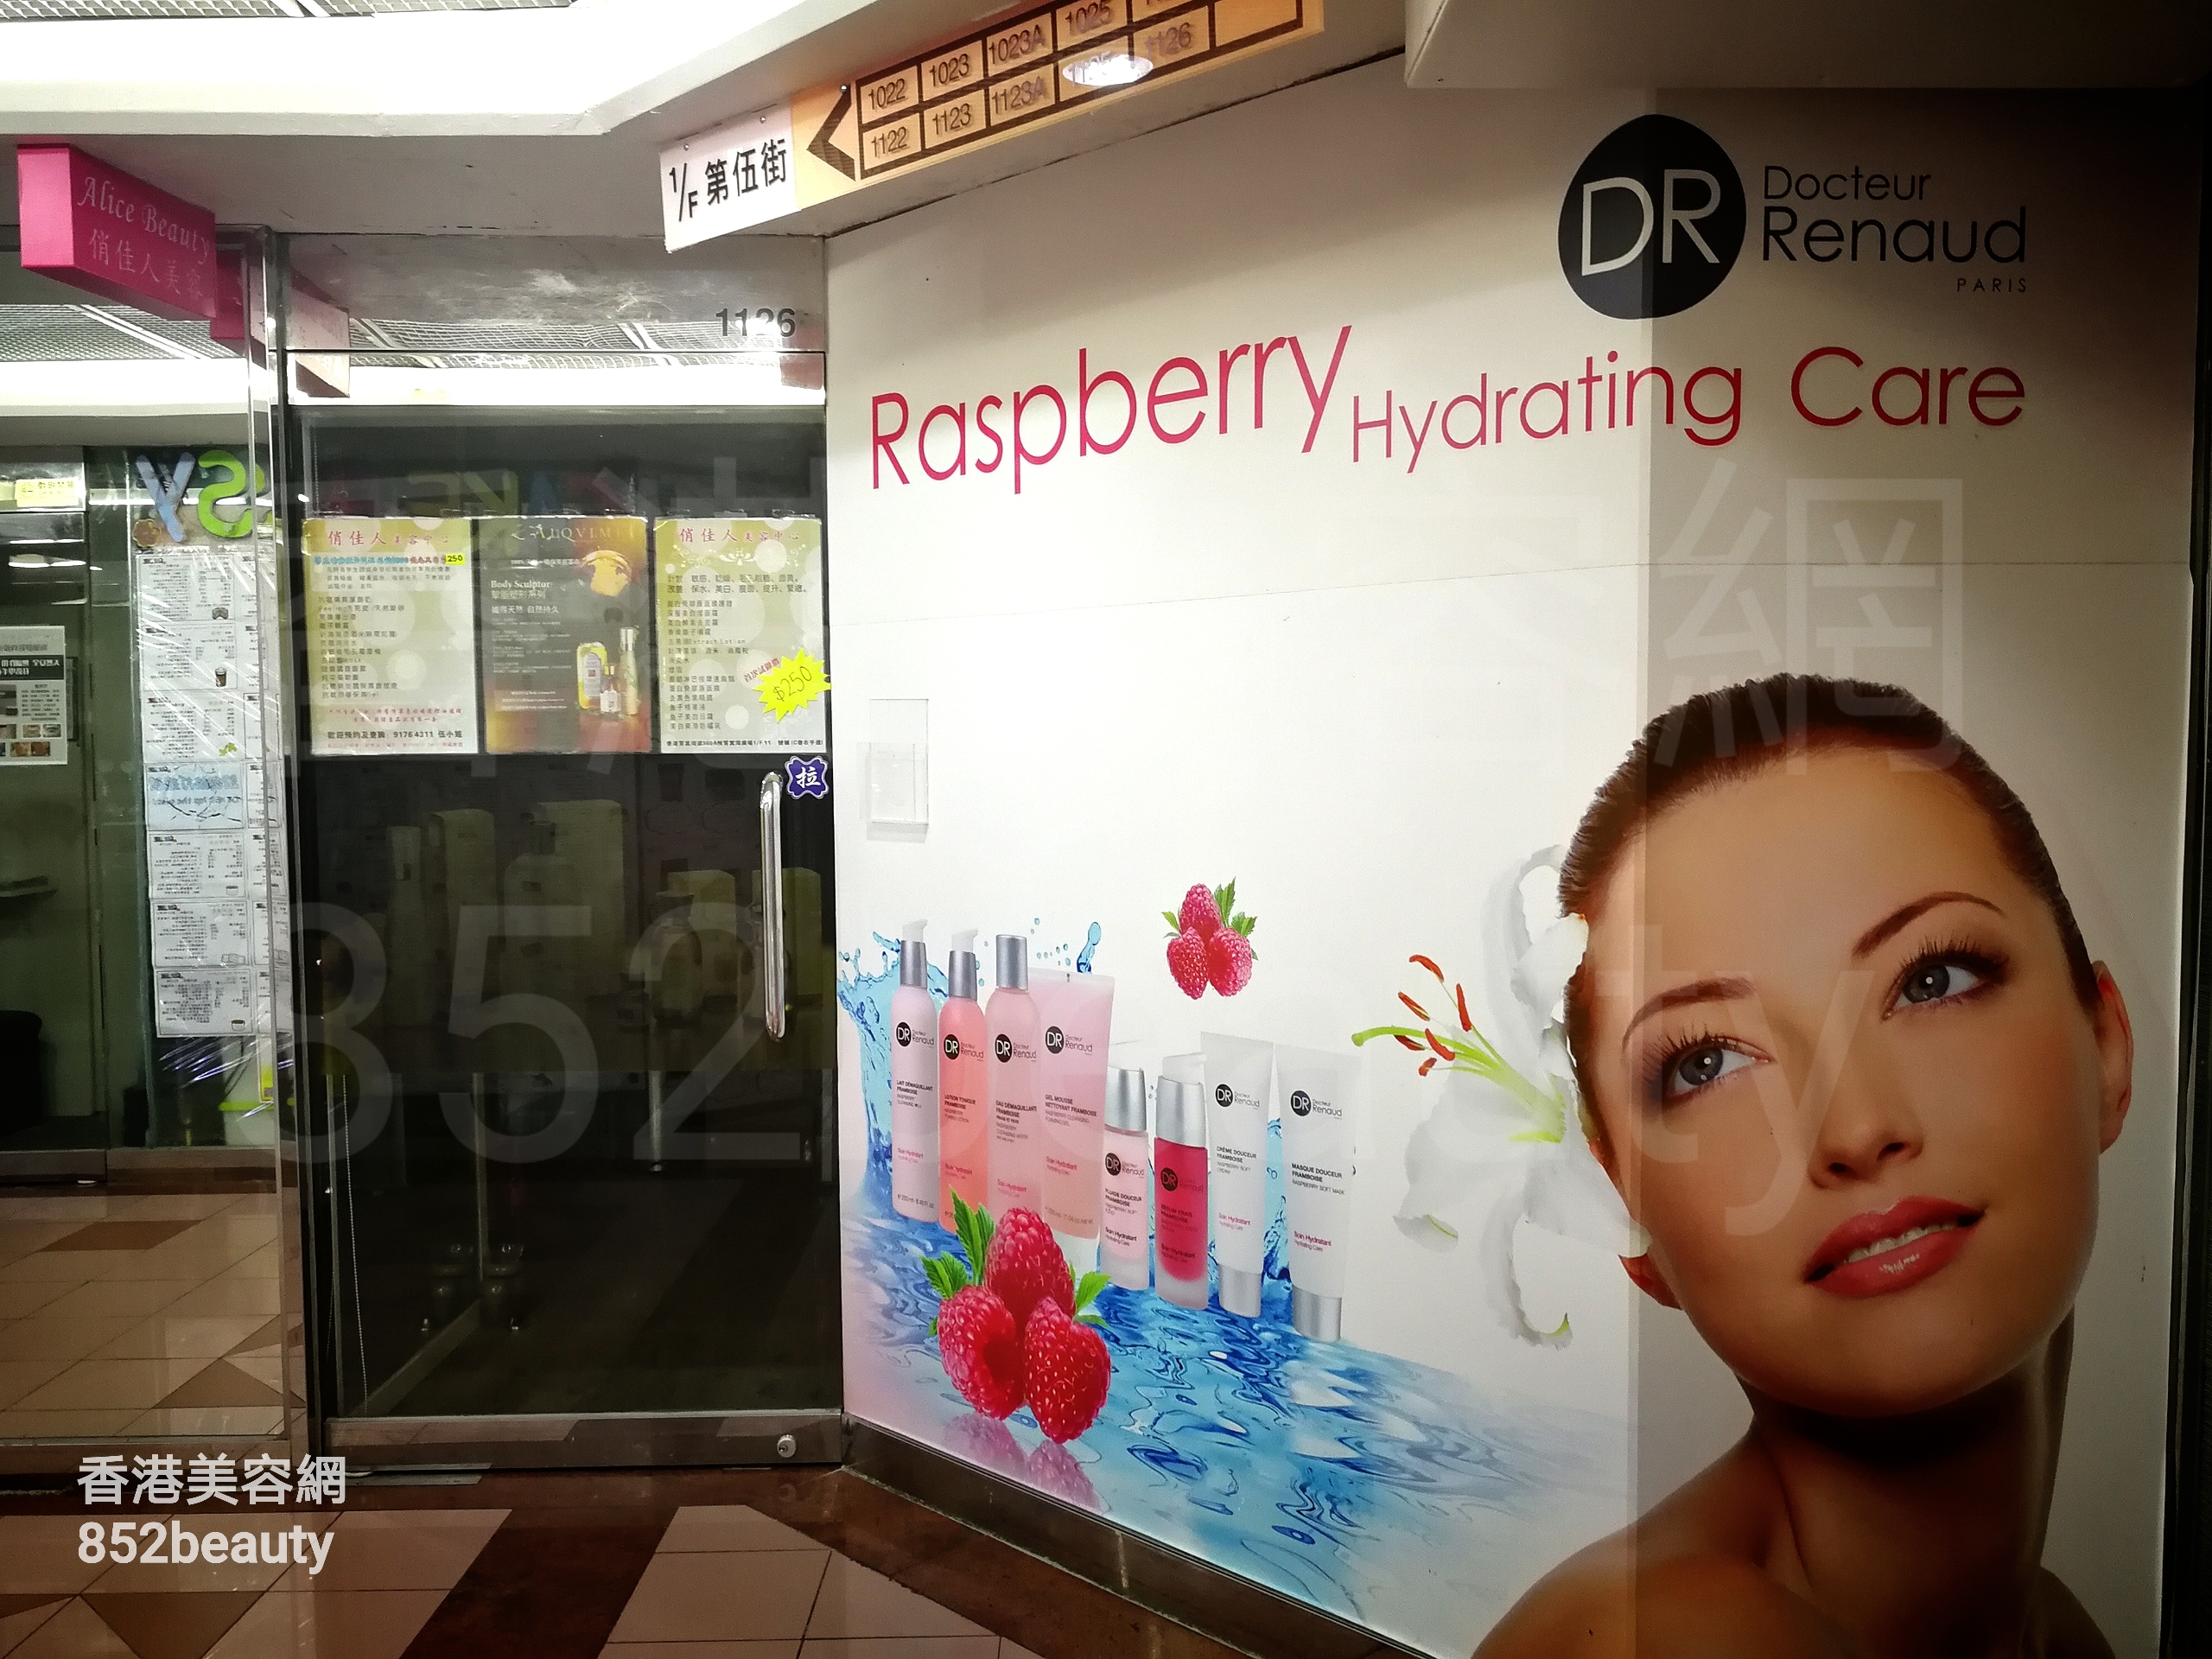 香港美容網 Hong Kong Beauty Salon 美容院 / 美容師: Alice Beauty 俏佳人美容